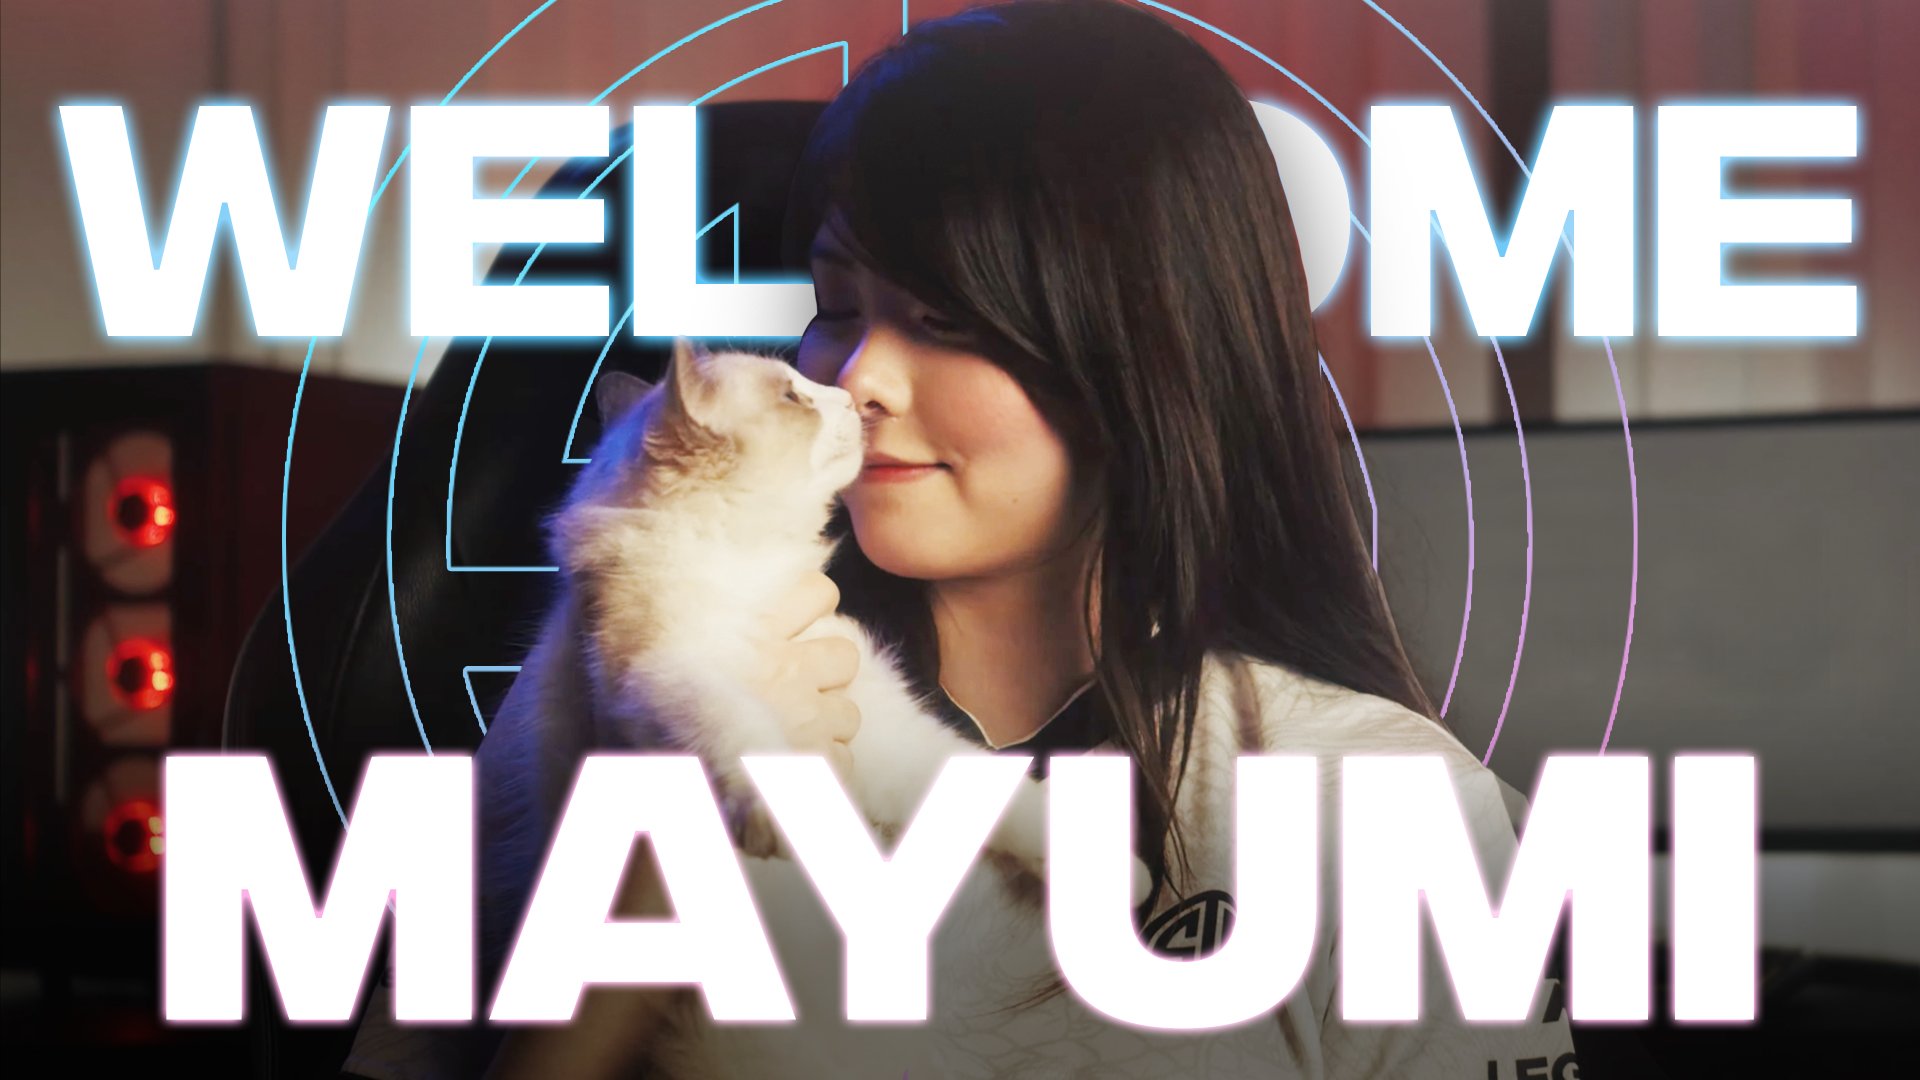 [閒聊] Mayumi加入TSM